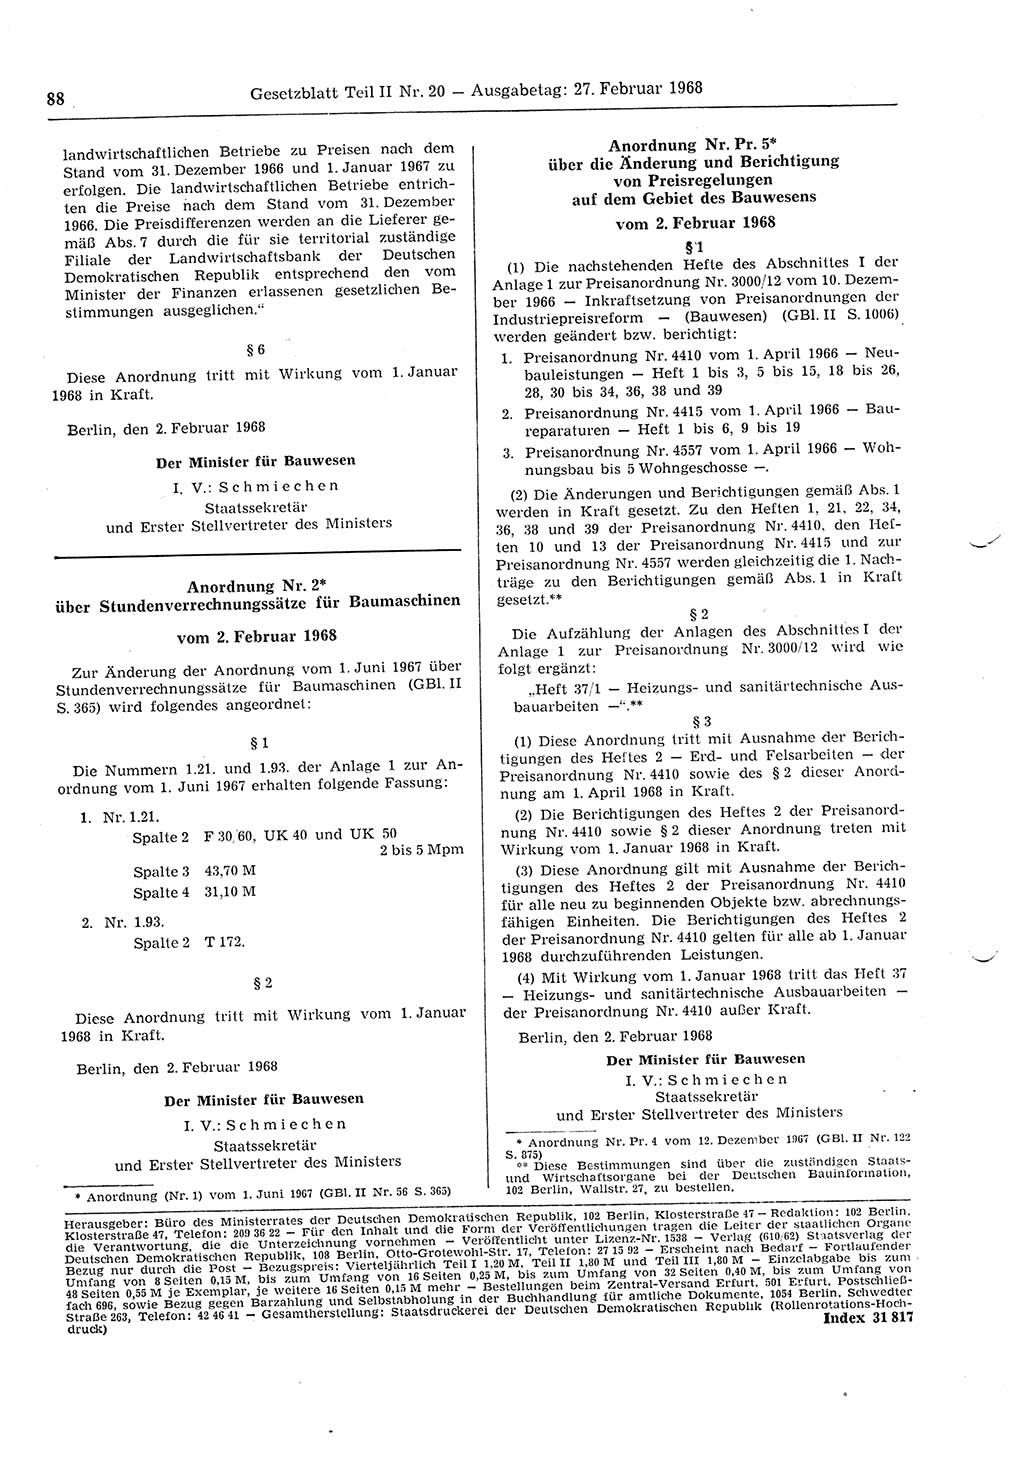 Gesetzblatt (GBl.) der Deutschen Demokratischen Republik (DDR) Teil ⅠⅠ 1968, Seite 88 (GBl. DDR ⅠⅠ 1968, S. 88)